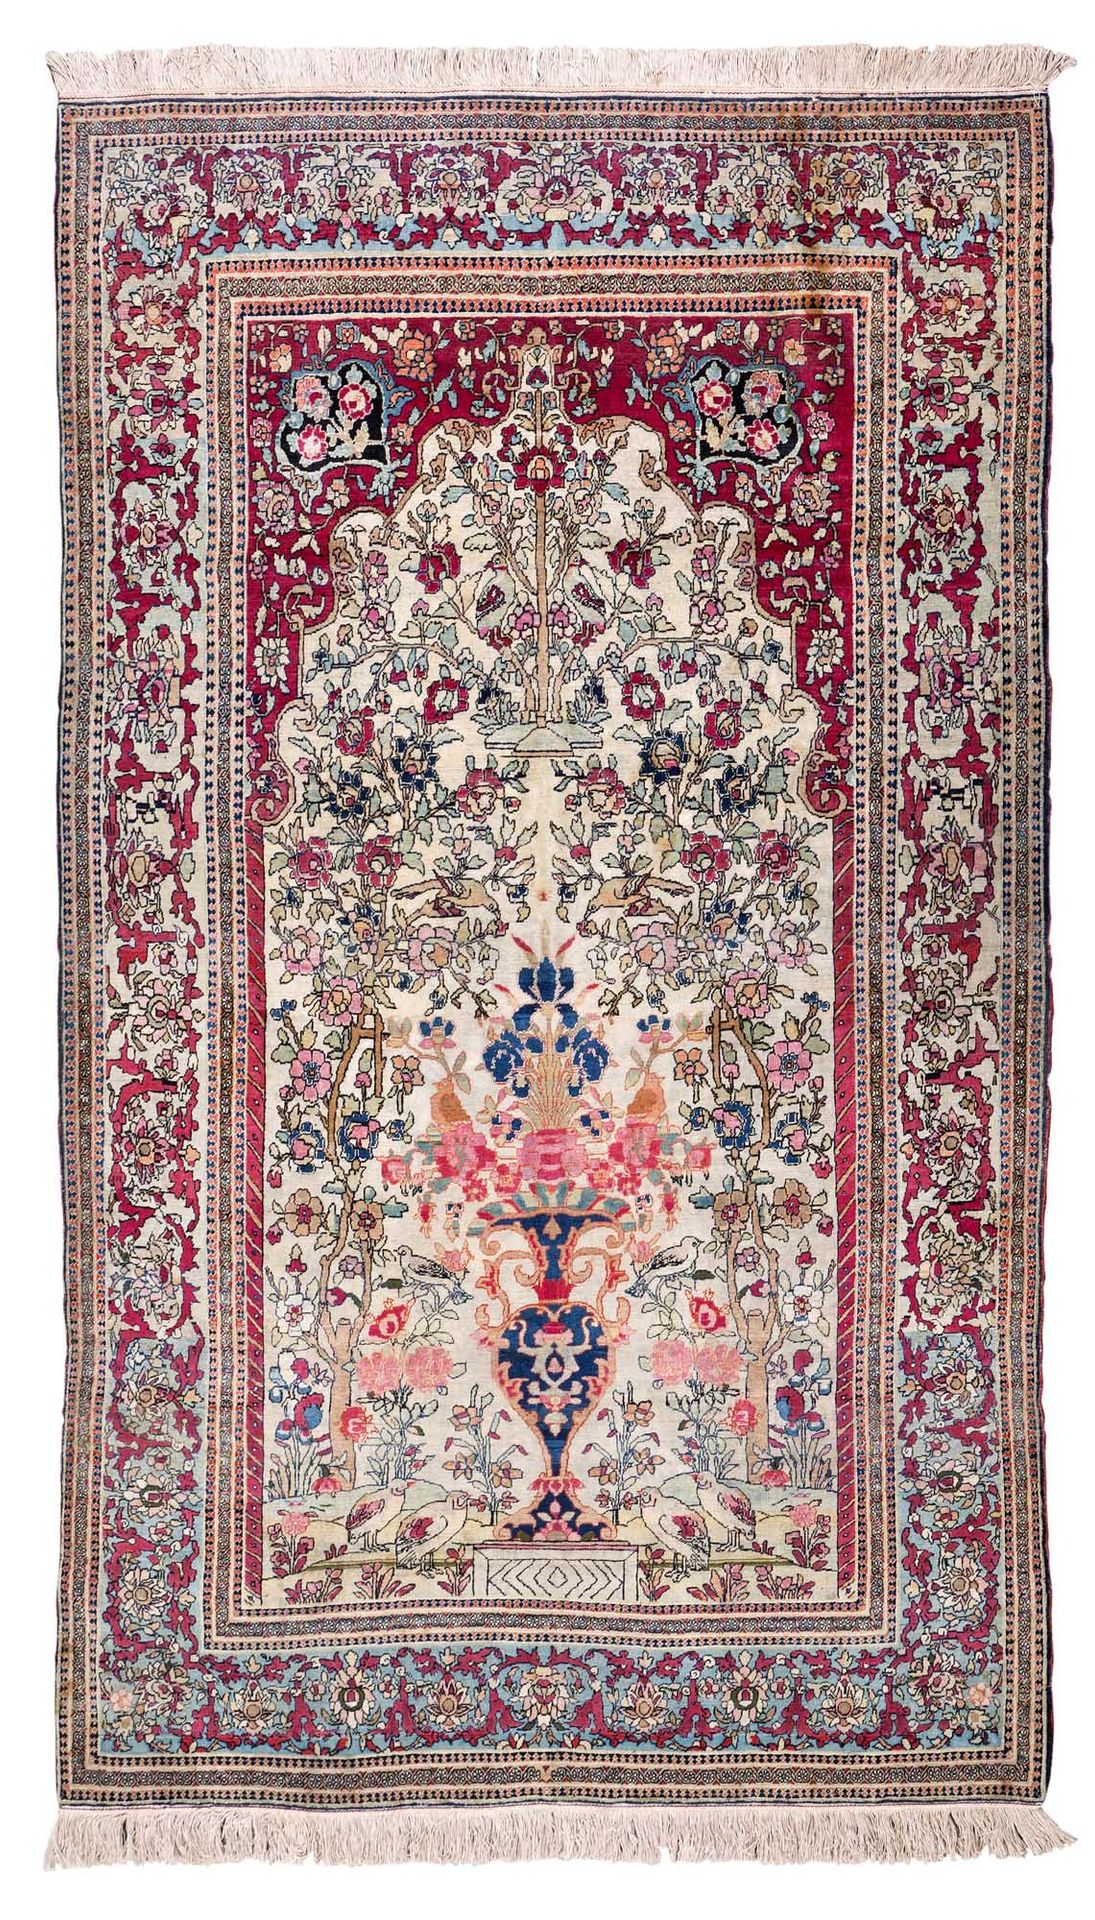 Null Tappeto ISPAHAN (Persia), fine XIX secolo

Dimensioni: 234 x 144cm

Caratte&hellip;